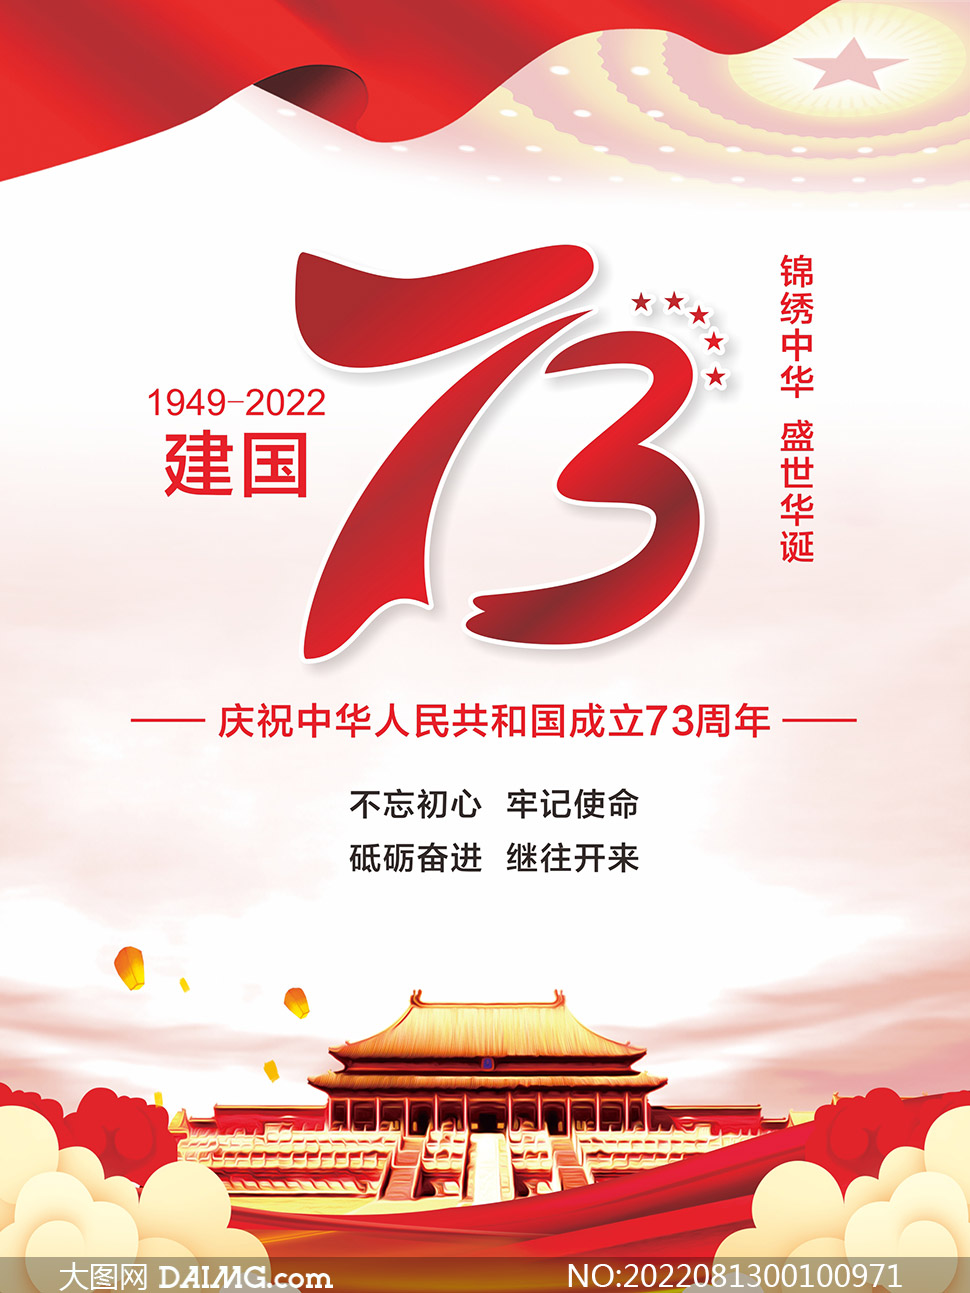 慶祝國慶節建國73周年海報設計矢量素材